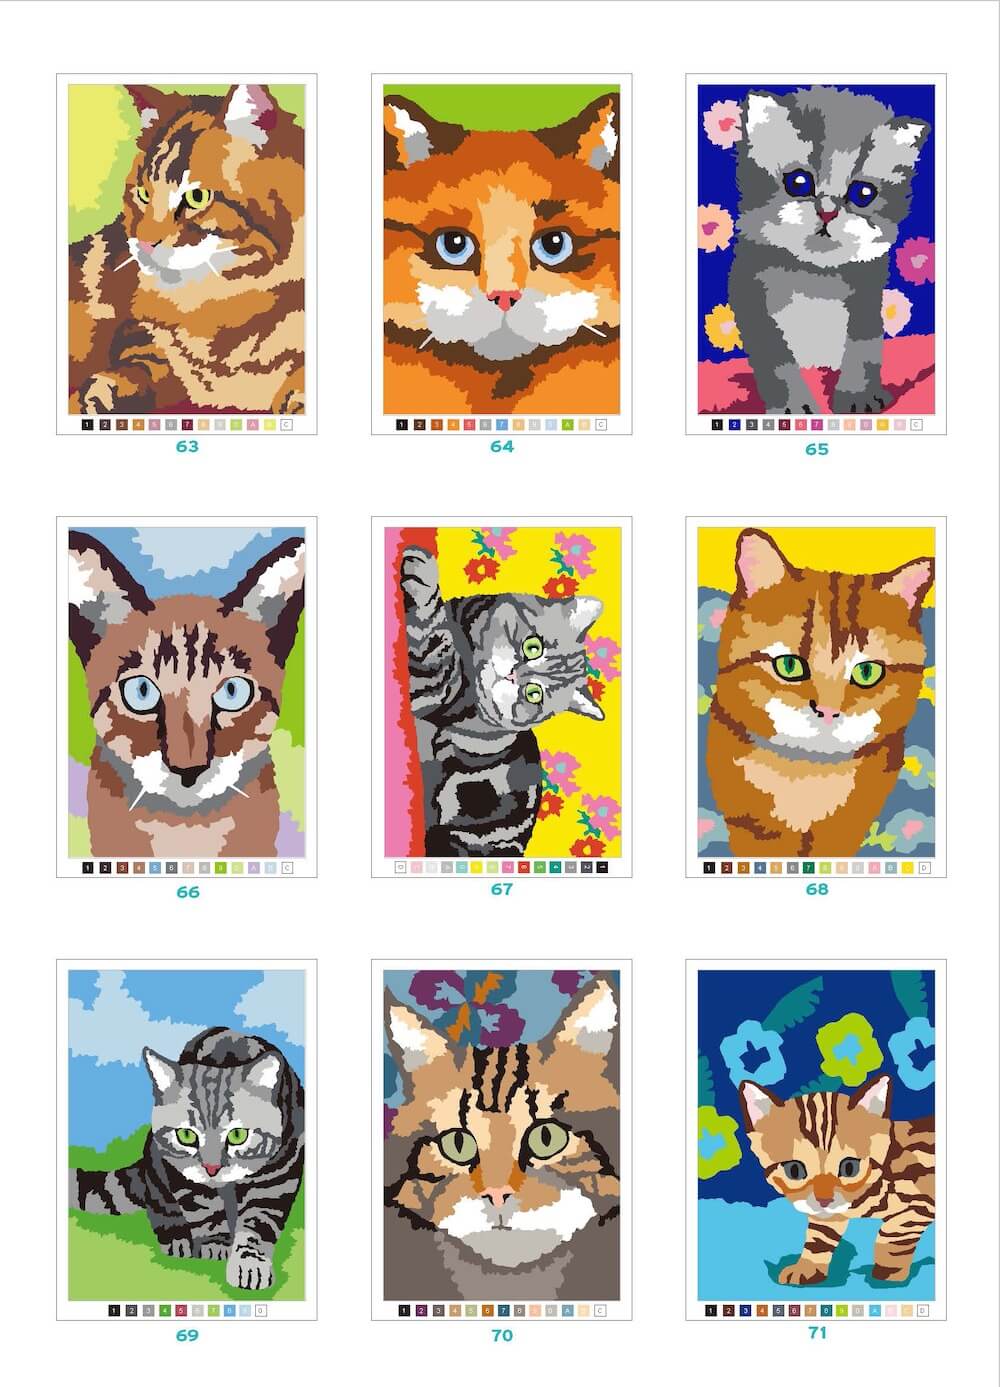 「100パズルぬりえ　9.キャット・ワールド」に収録されている猫のイラスト例2